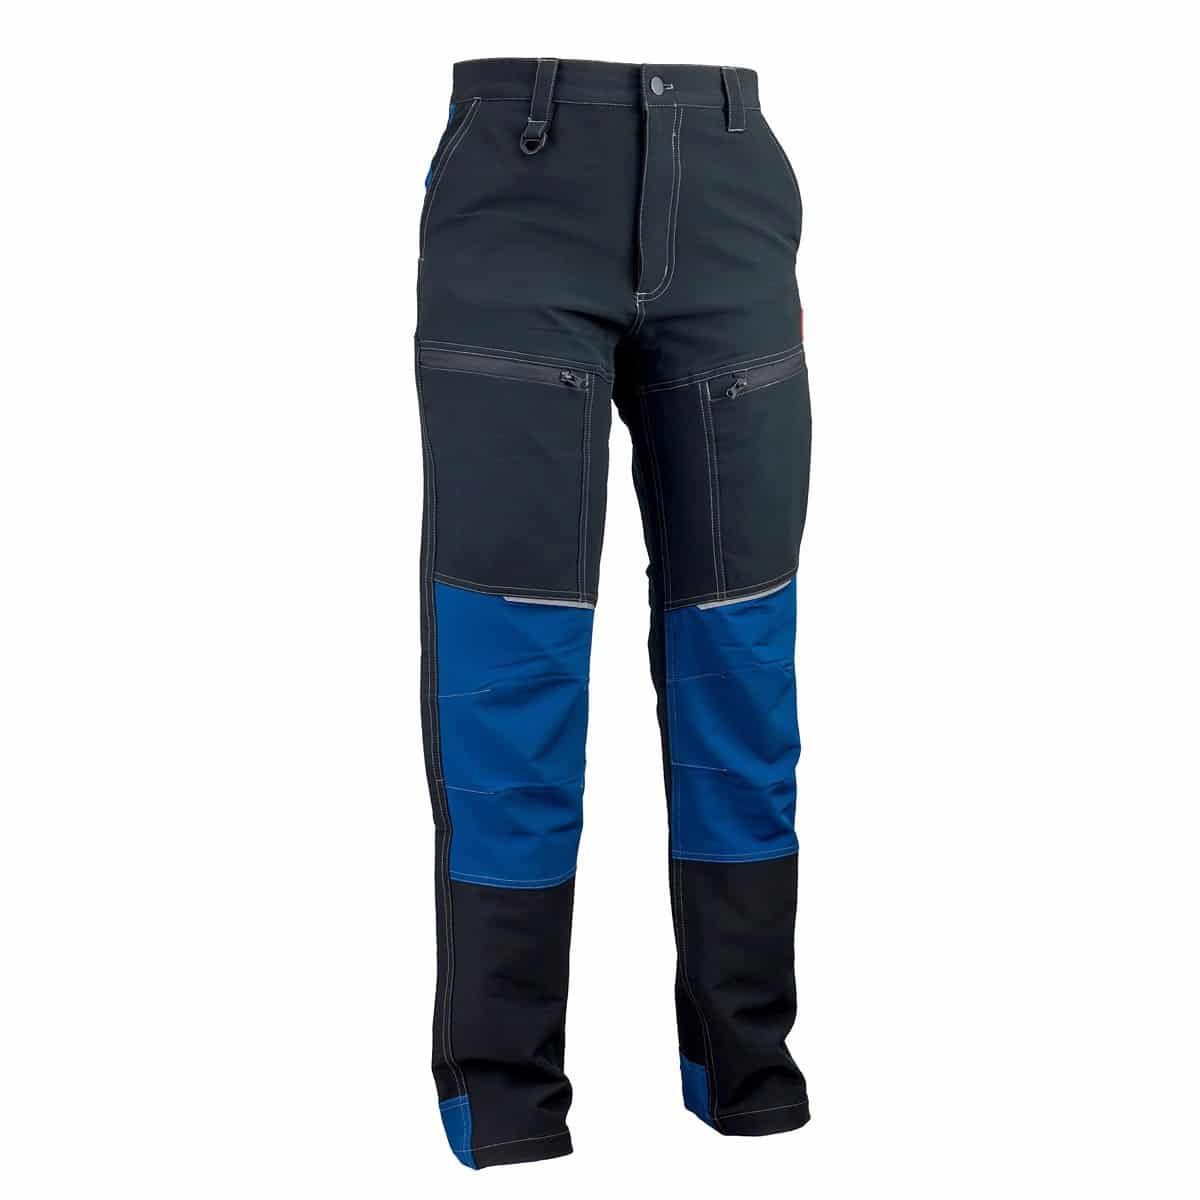 Spodnie do pasa URG-710 (250g) SOFTSHELL – Urgent